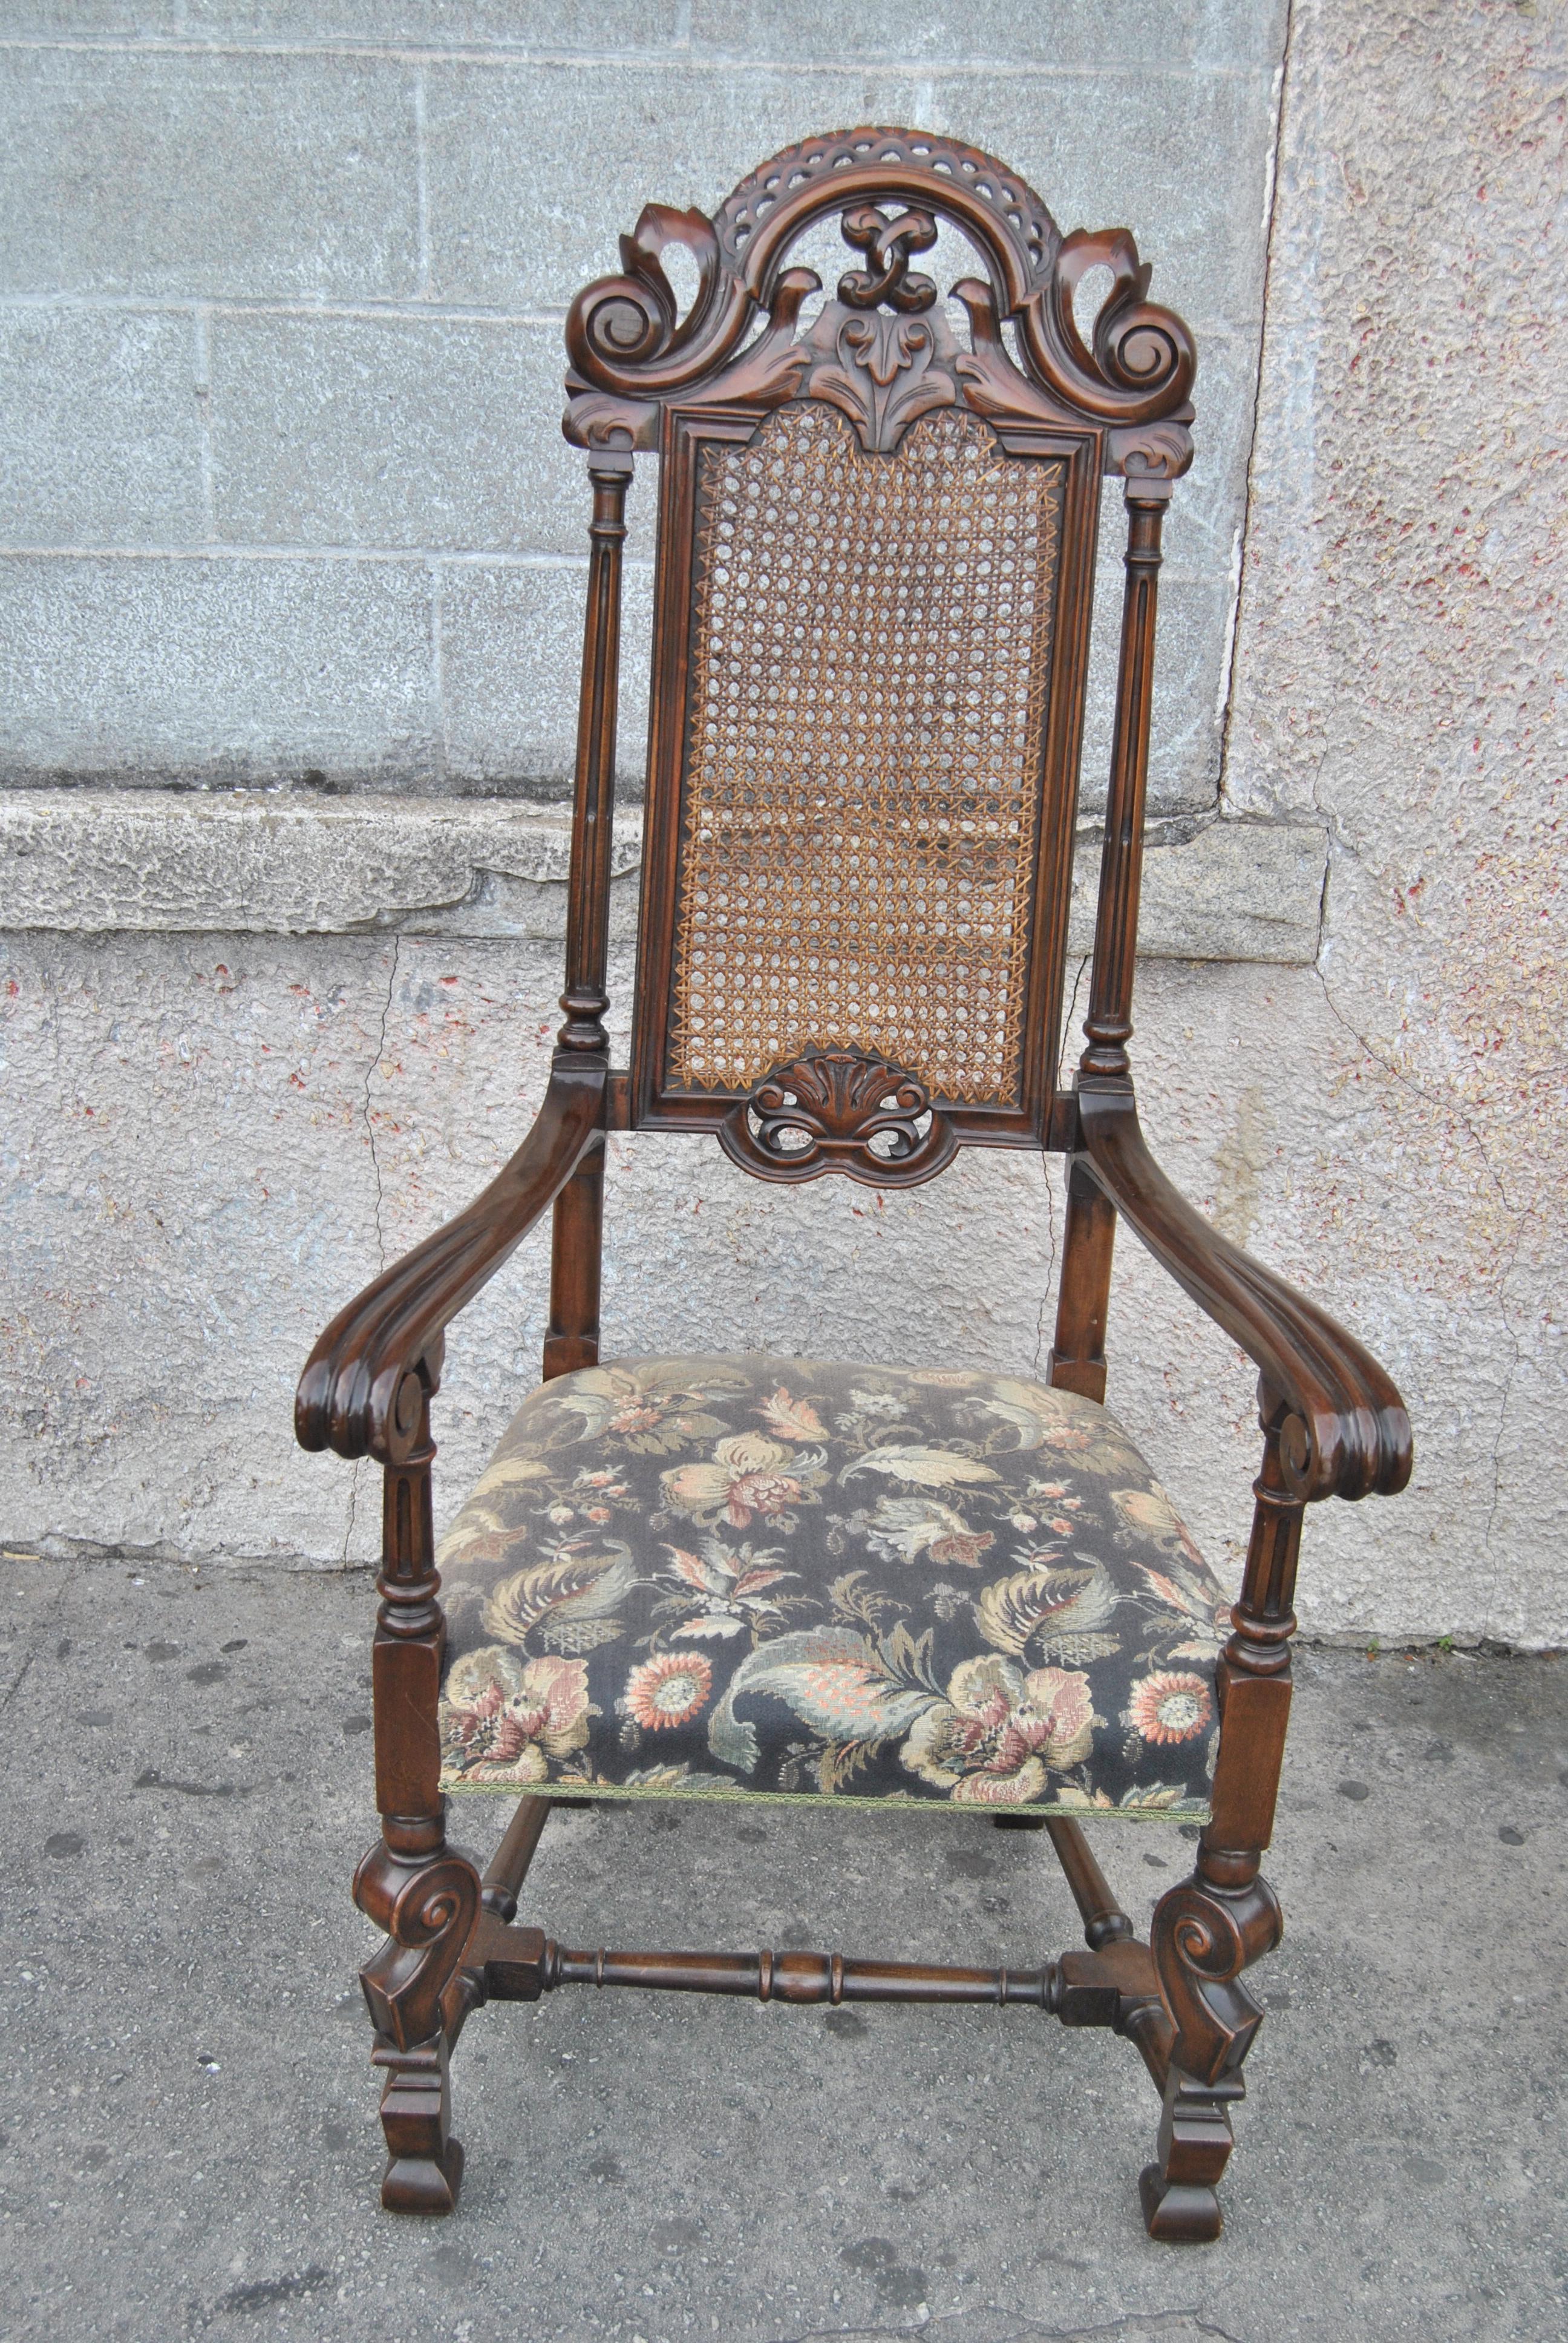 Dies ist ein Satz von acht Stühlen aus Nussbaumholz, bestehend aus 2 Armlehnen und 6 Seiten. Die Stühle wurden in England um 1880 hergestellt. Sie sind im Stil von William und Mary gehalten. Sie haben ein wunderschön geformtes Wappen auf der